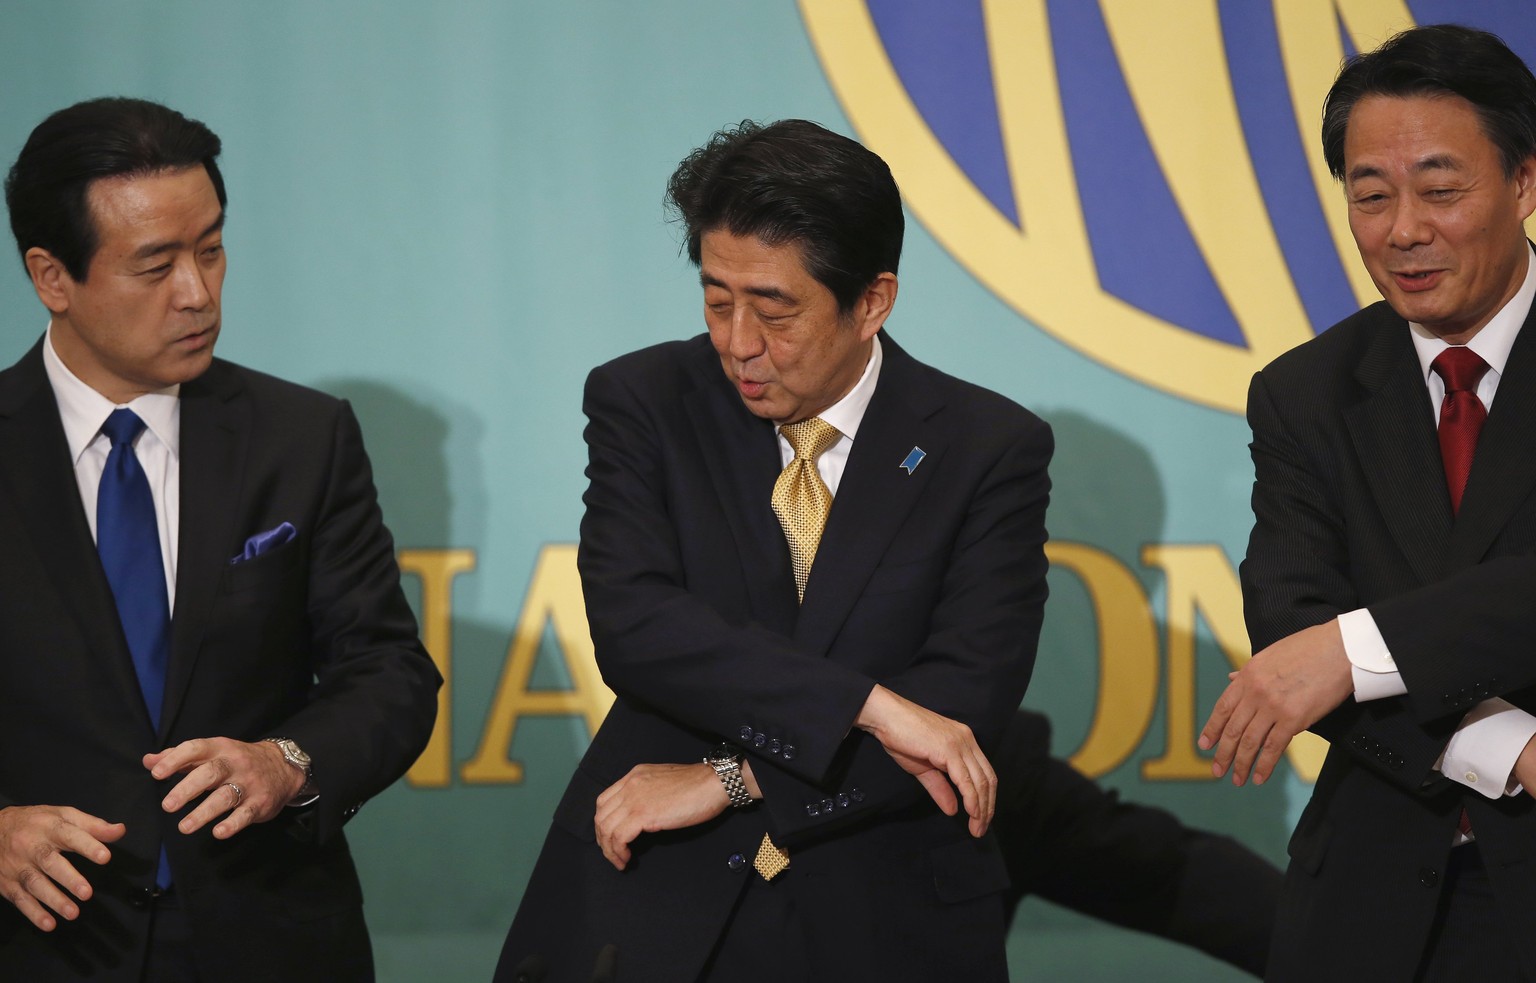 Treffen von drei Parteichefs in Japan: Shinzo Abe (Mitte) von der Liberaldemokratischen Partei (LDP), Banri Kaieda (rechts) von der Demokratische Partei (DPJ) und Kenji Eda (links) von der Innovationspartei.